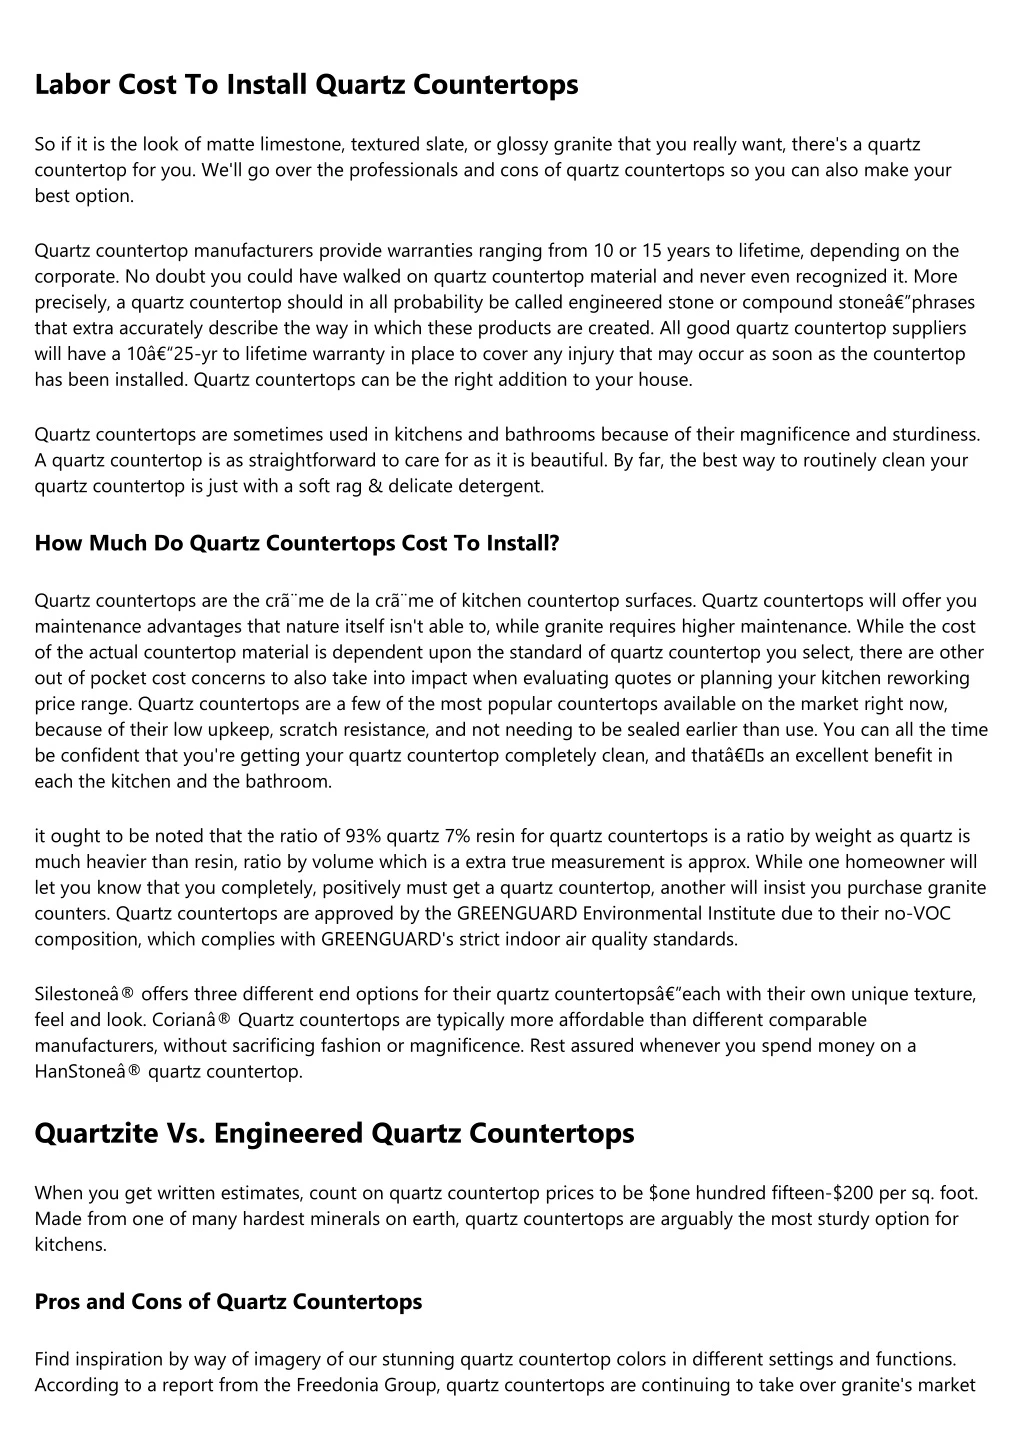 labor cost to install quartz countertops